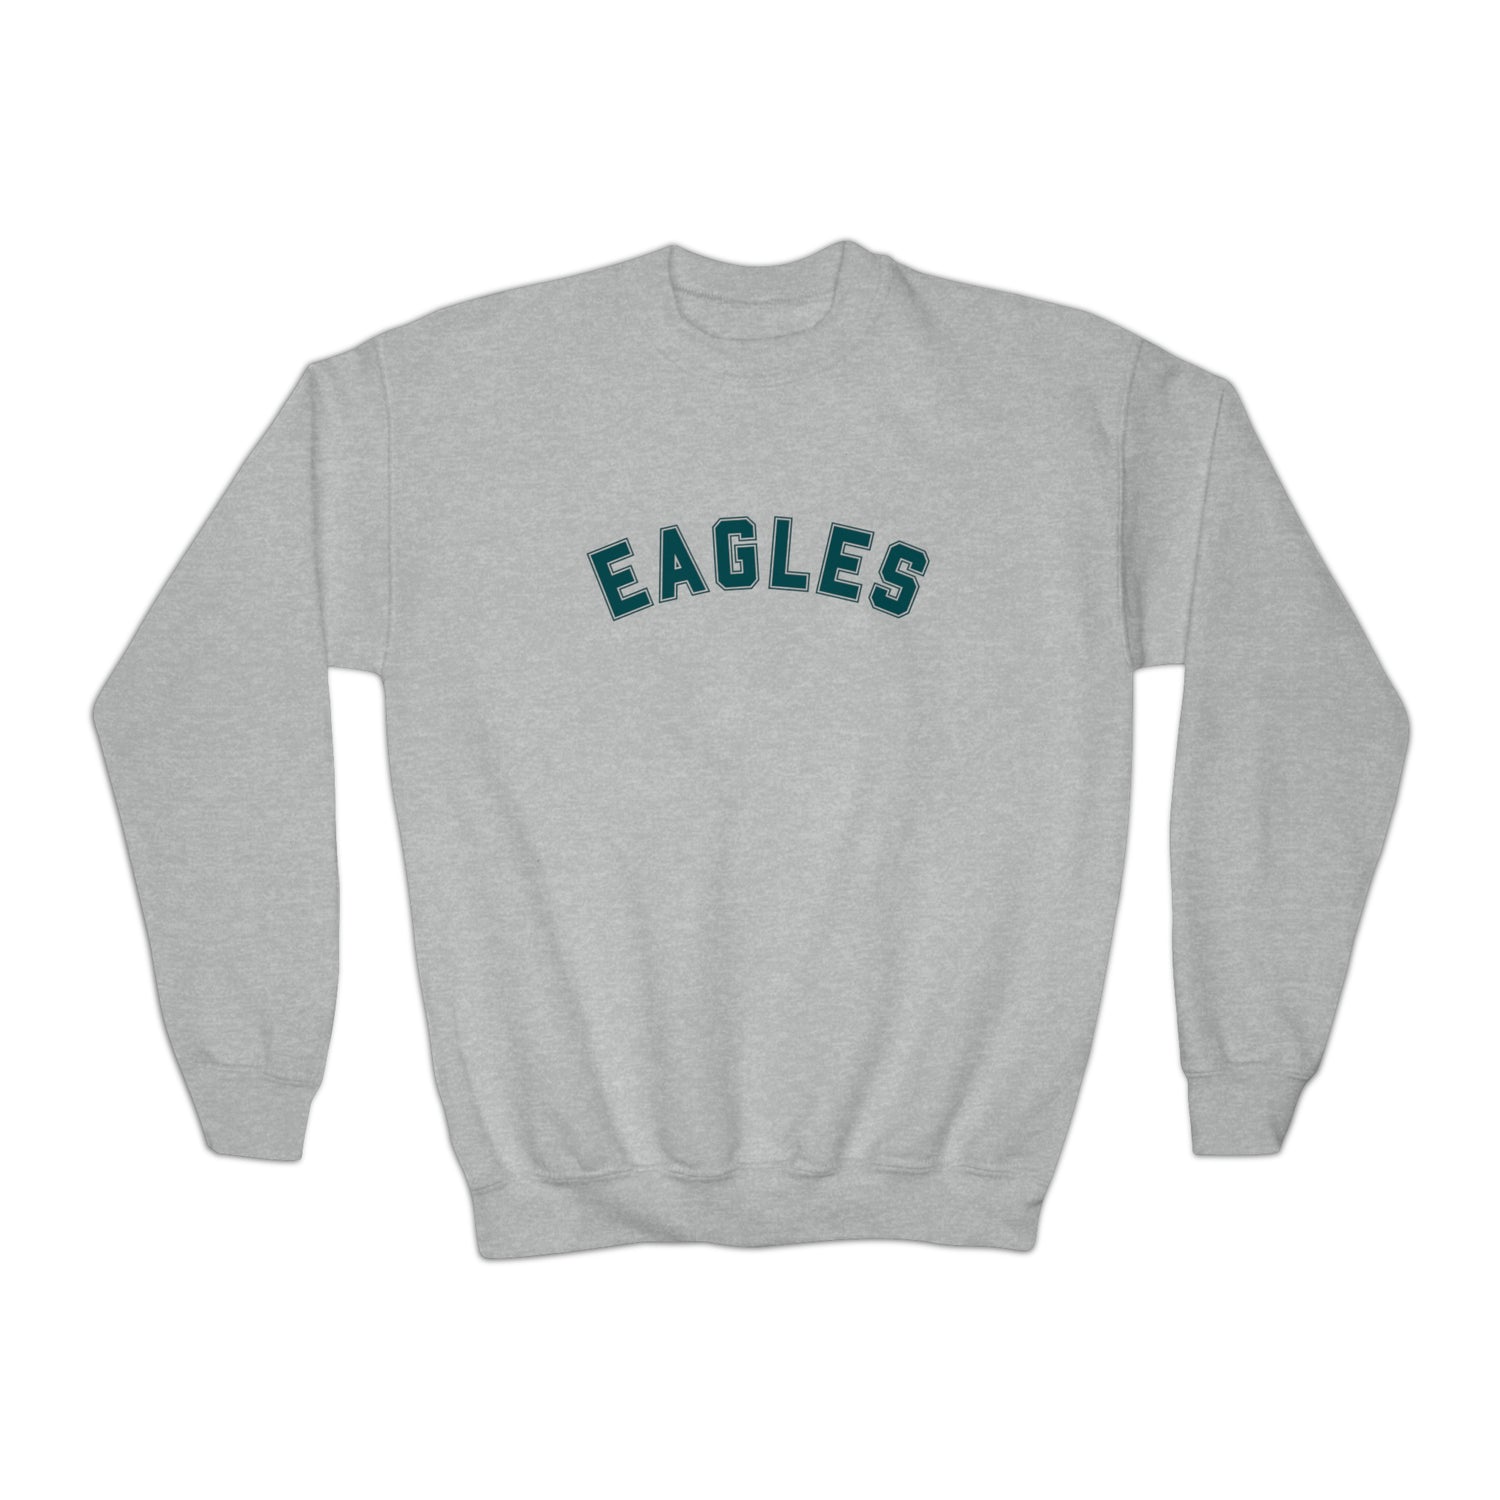 Youth Philadelphia Eagles Crewneck Sweatshirt - Home Field Fan